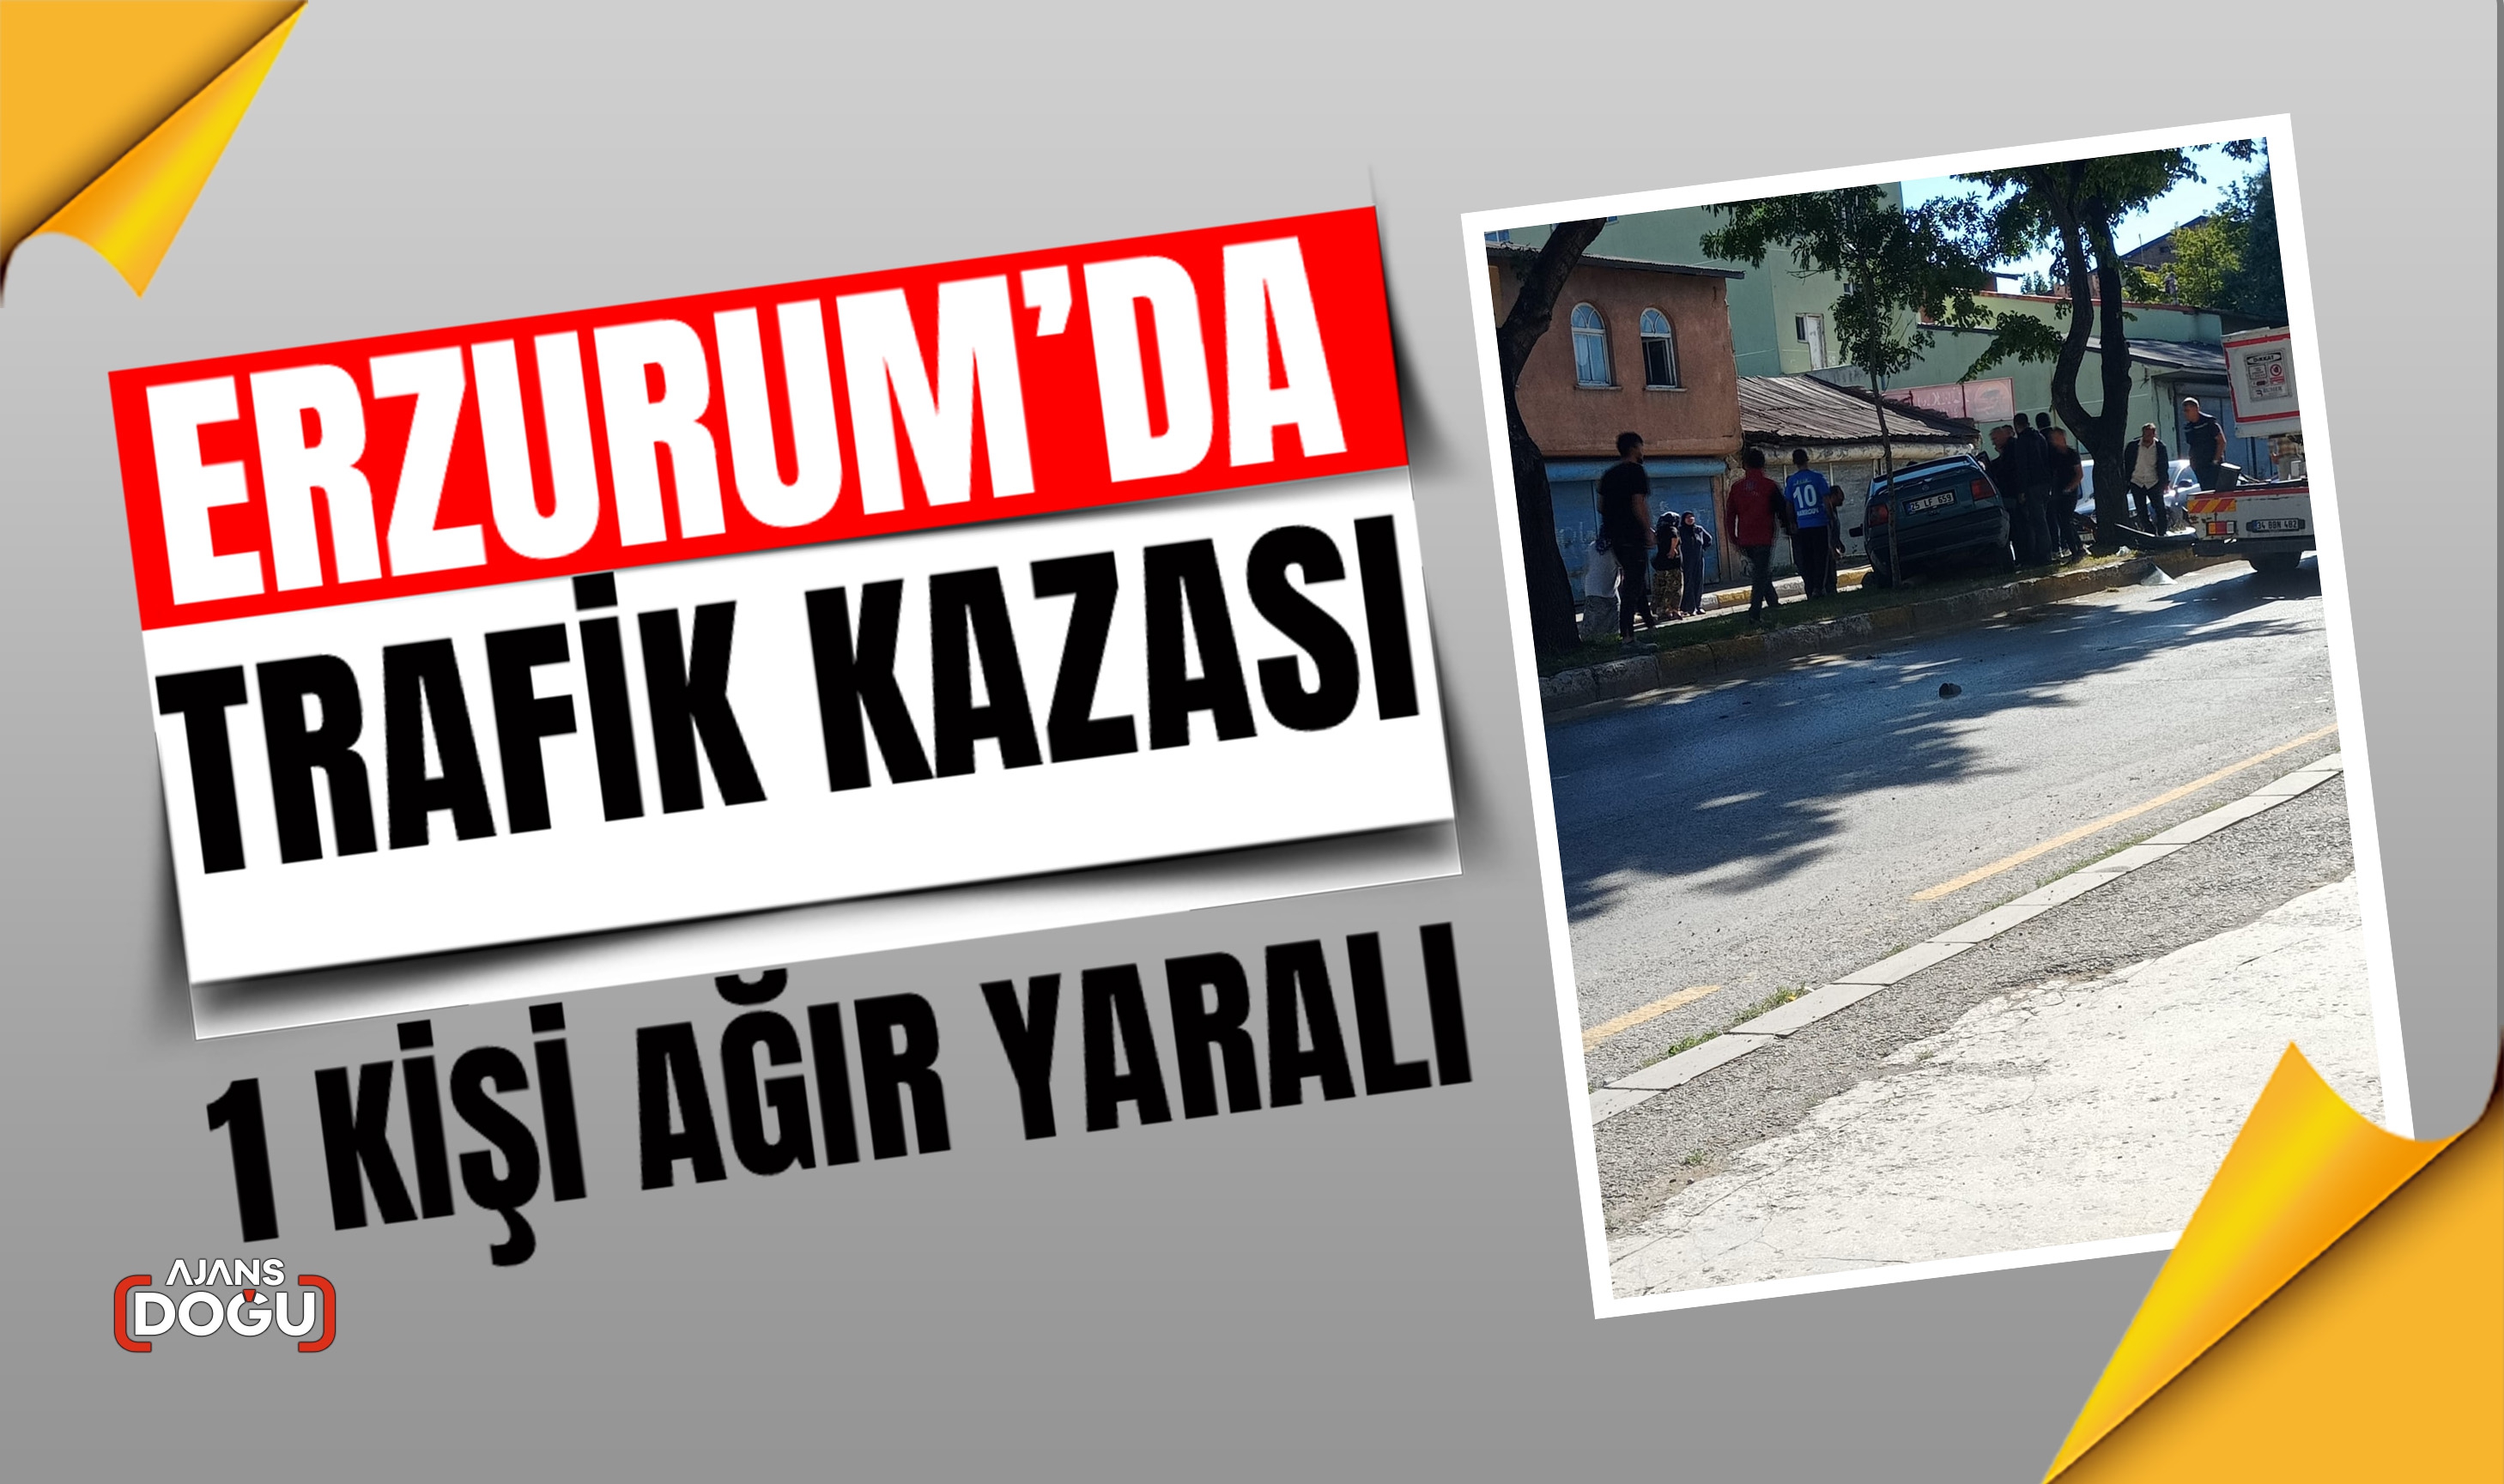 Erzurum'da trafik kazsı bir kişi ağır yaralandı